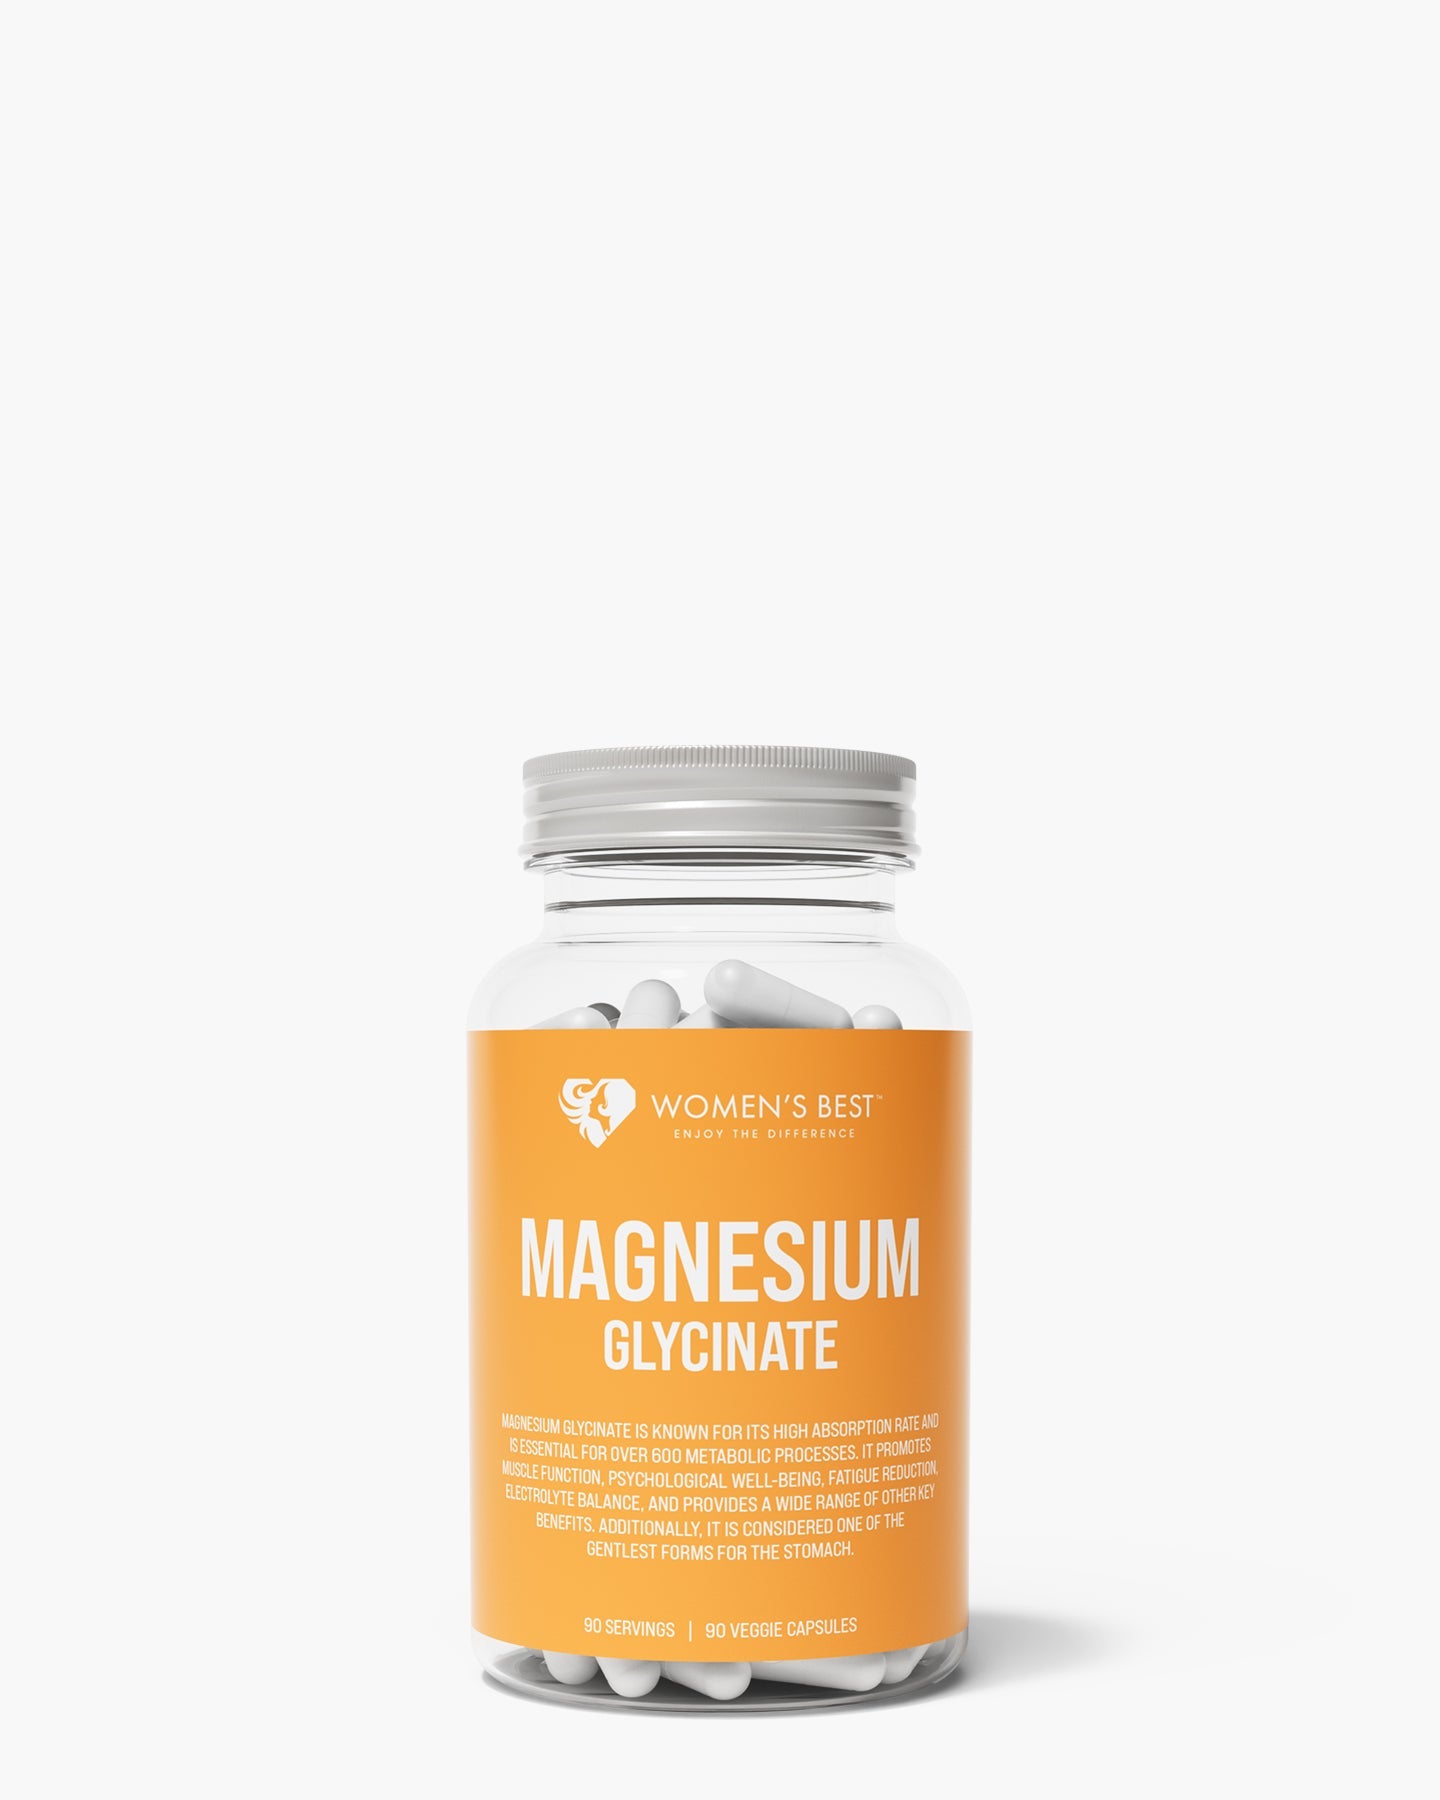 Magnesium gegen Müdigkeit